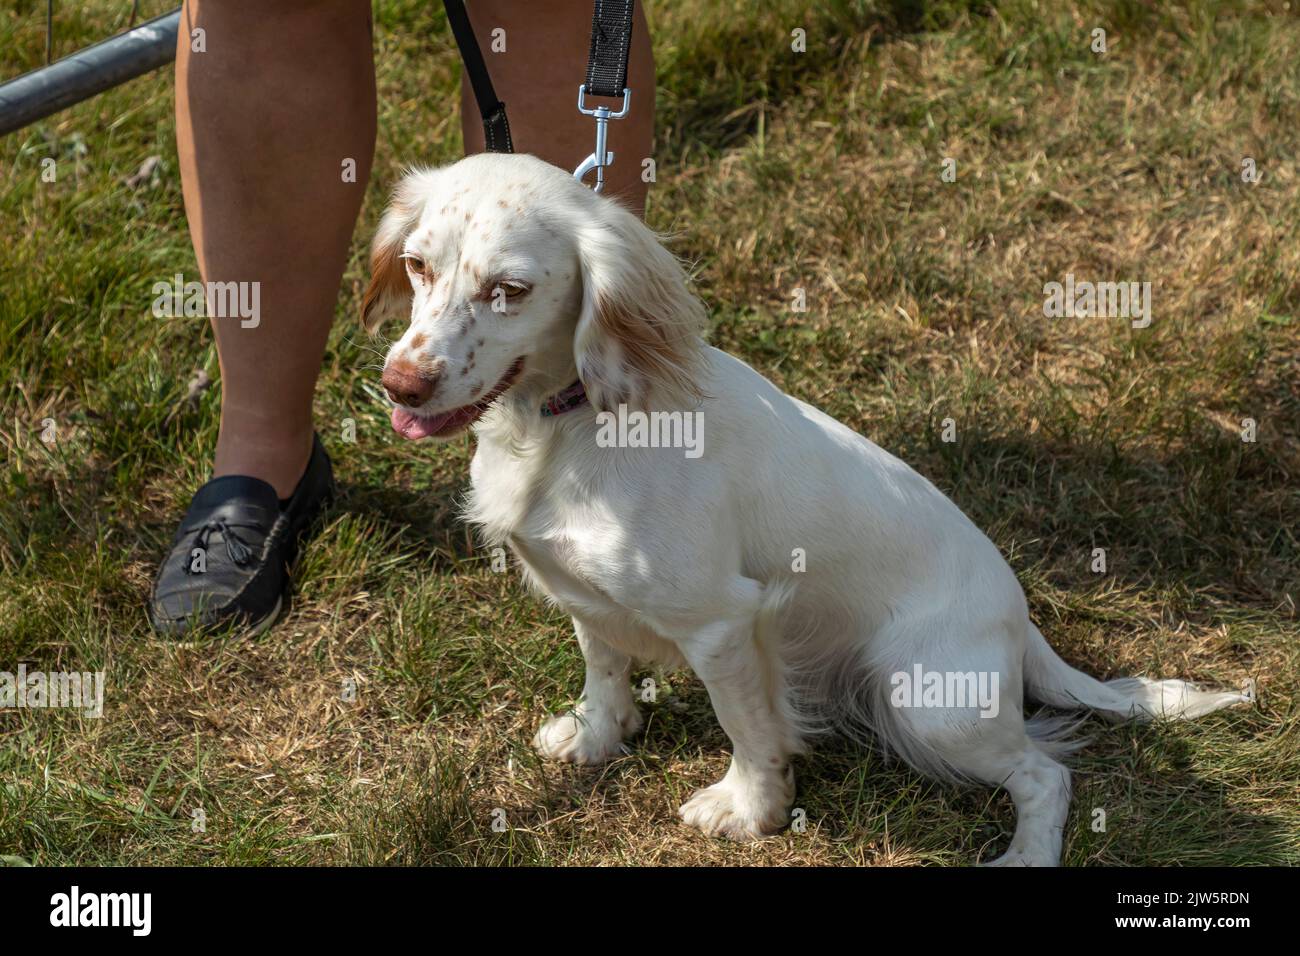 Kleiner weiß-braun gefleckter Hund, der auf dem Gras neben seinem Besitzer sitzt Stockfoto